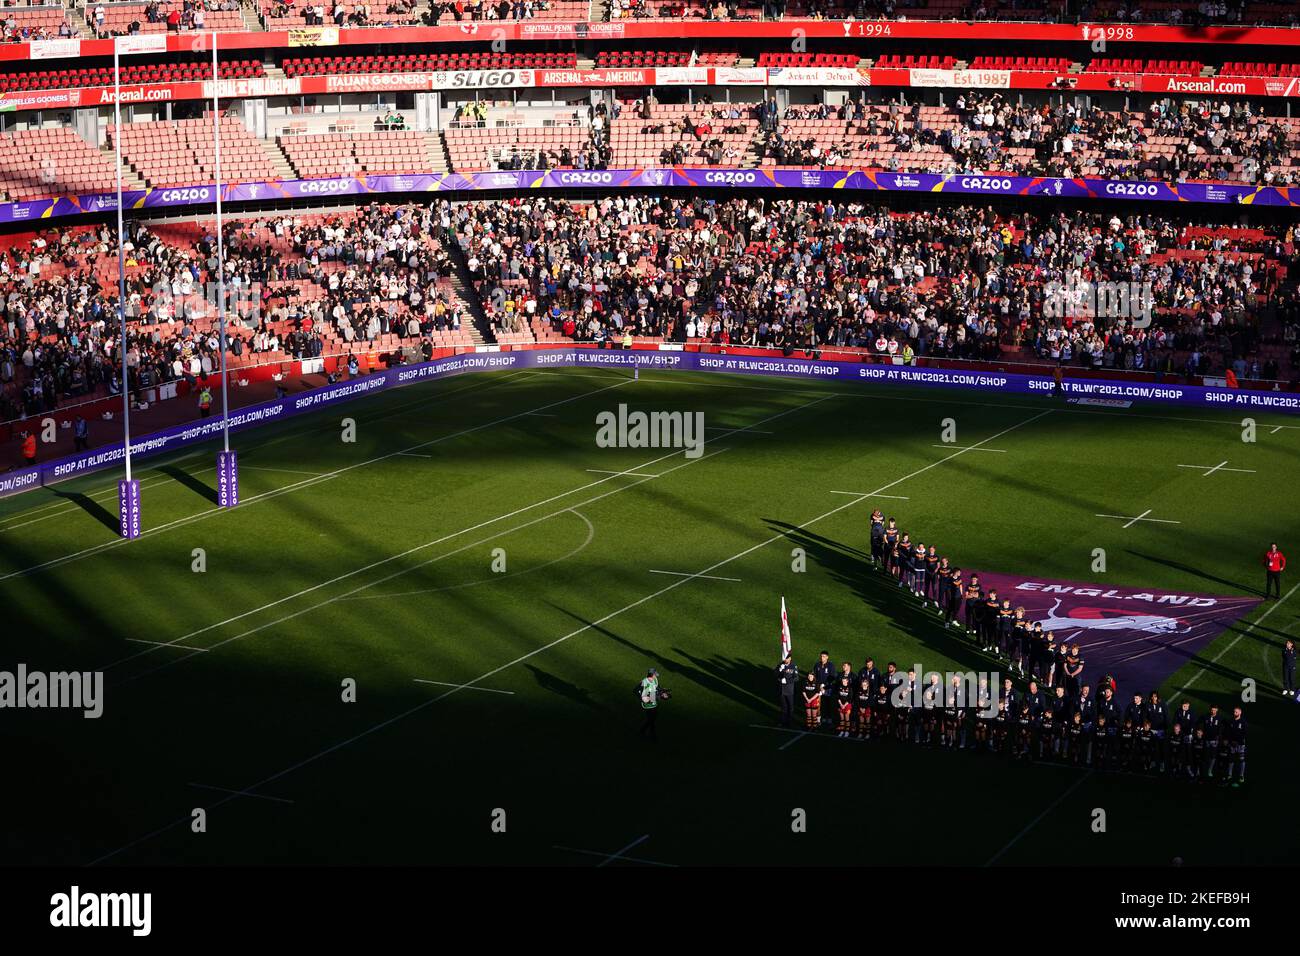 England stellt sich vor dem Halbfinalspiel der Rugby League im Emirates Stadium in London an. Bilddatum: Samstag, 12. November 2022. Stockfoto